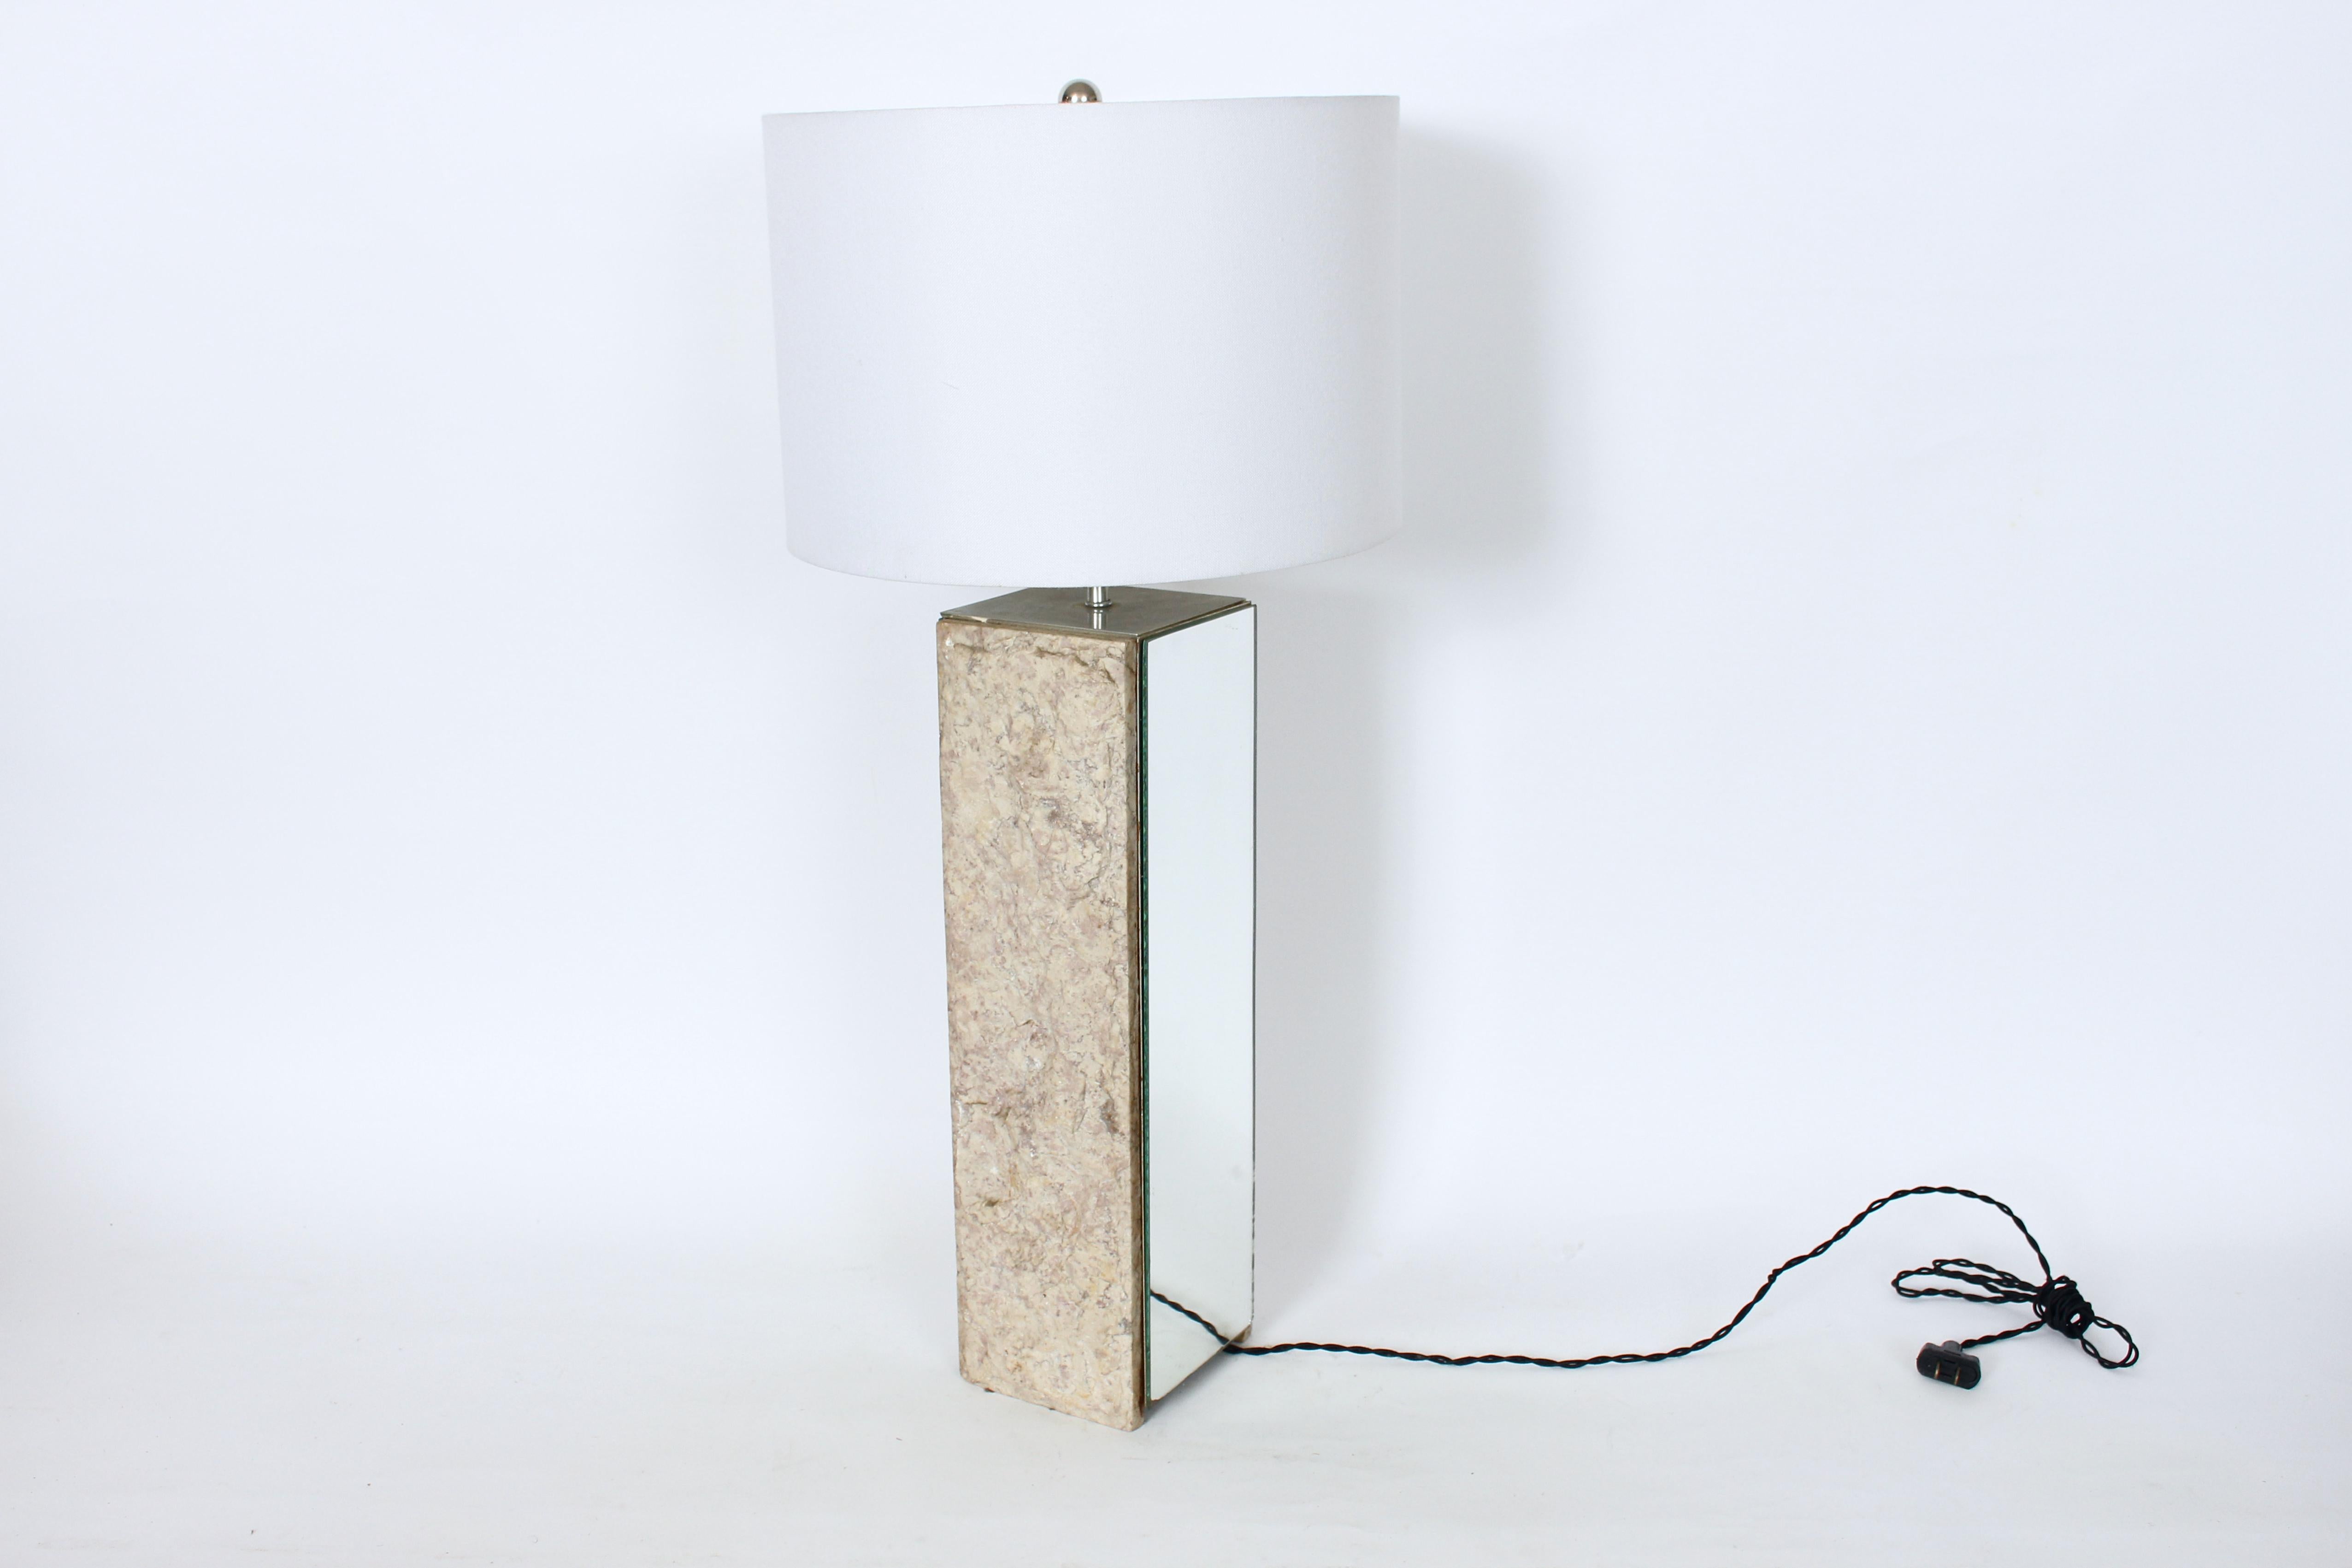 Mid Century Laurel Lamp Co. Lampe de table en marbre beige brut et miroir.  Il est composé de travertin vertical sur deux faces en crème, beige, taupe avec des touches de rouge, et de panneaux miroirs réfléchissants sur deux faces (18,5 H x 5 P).